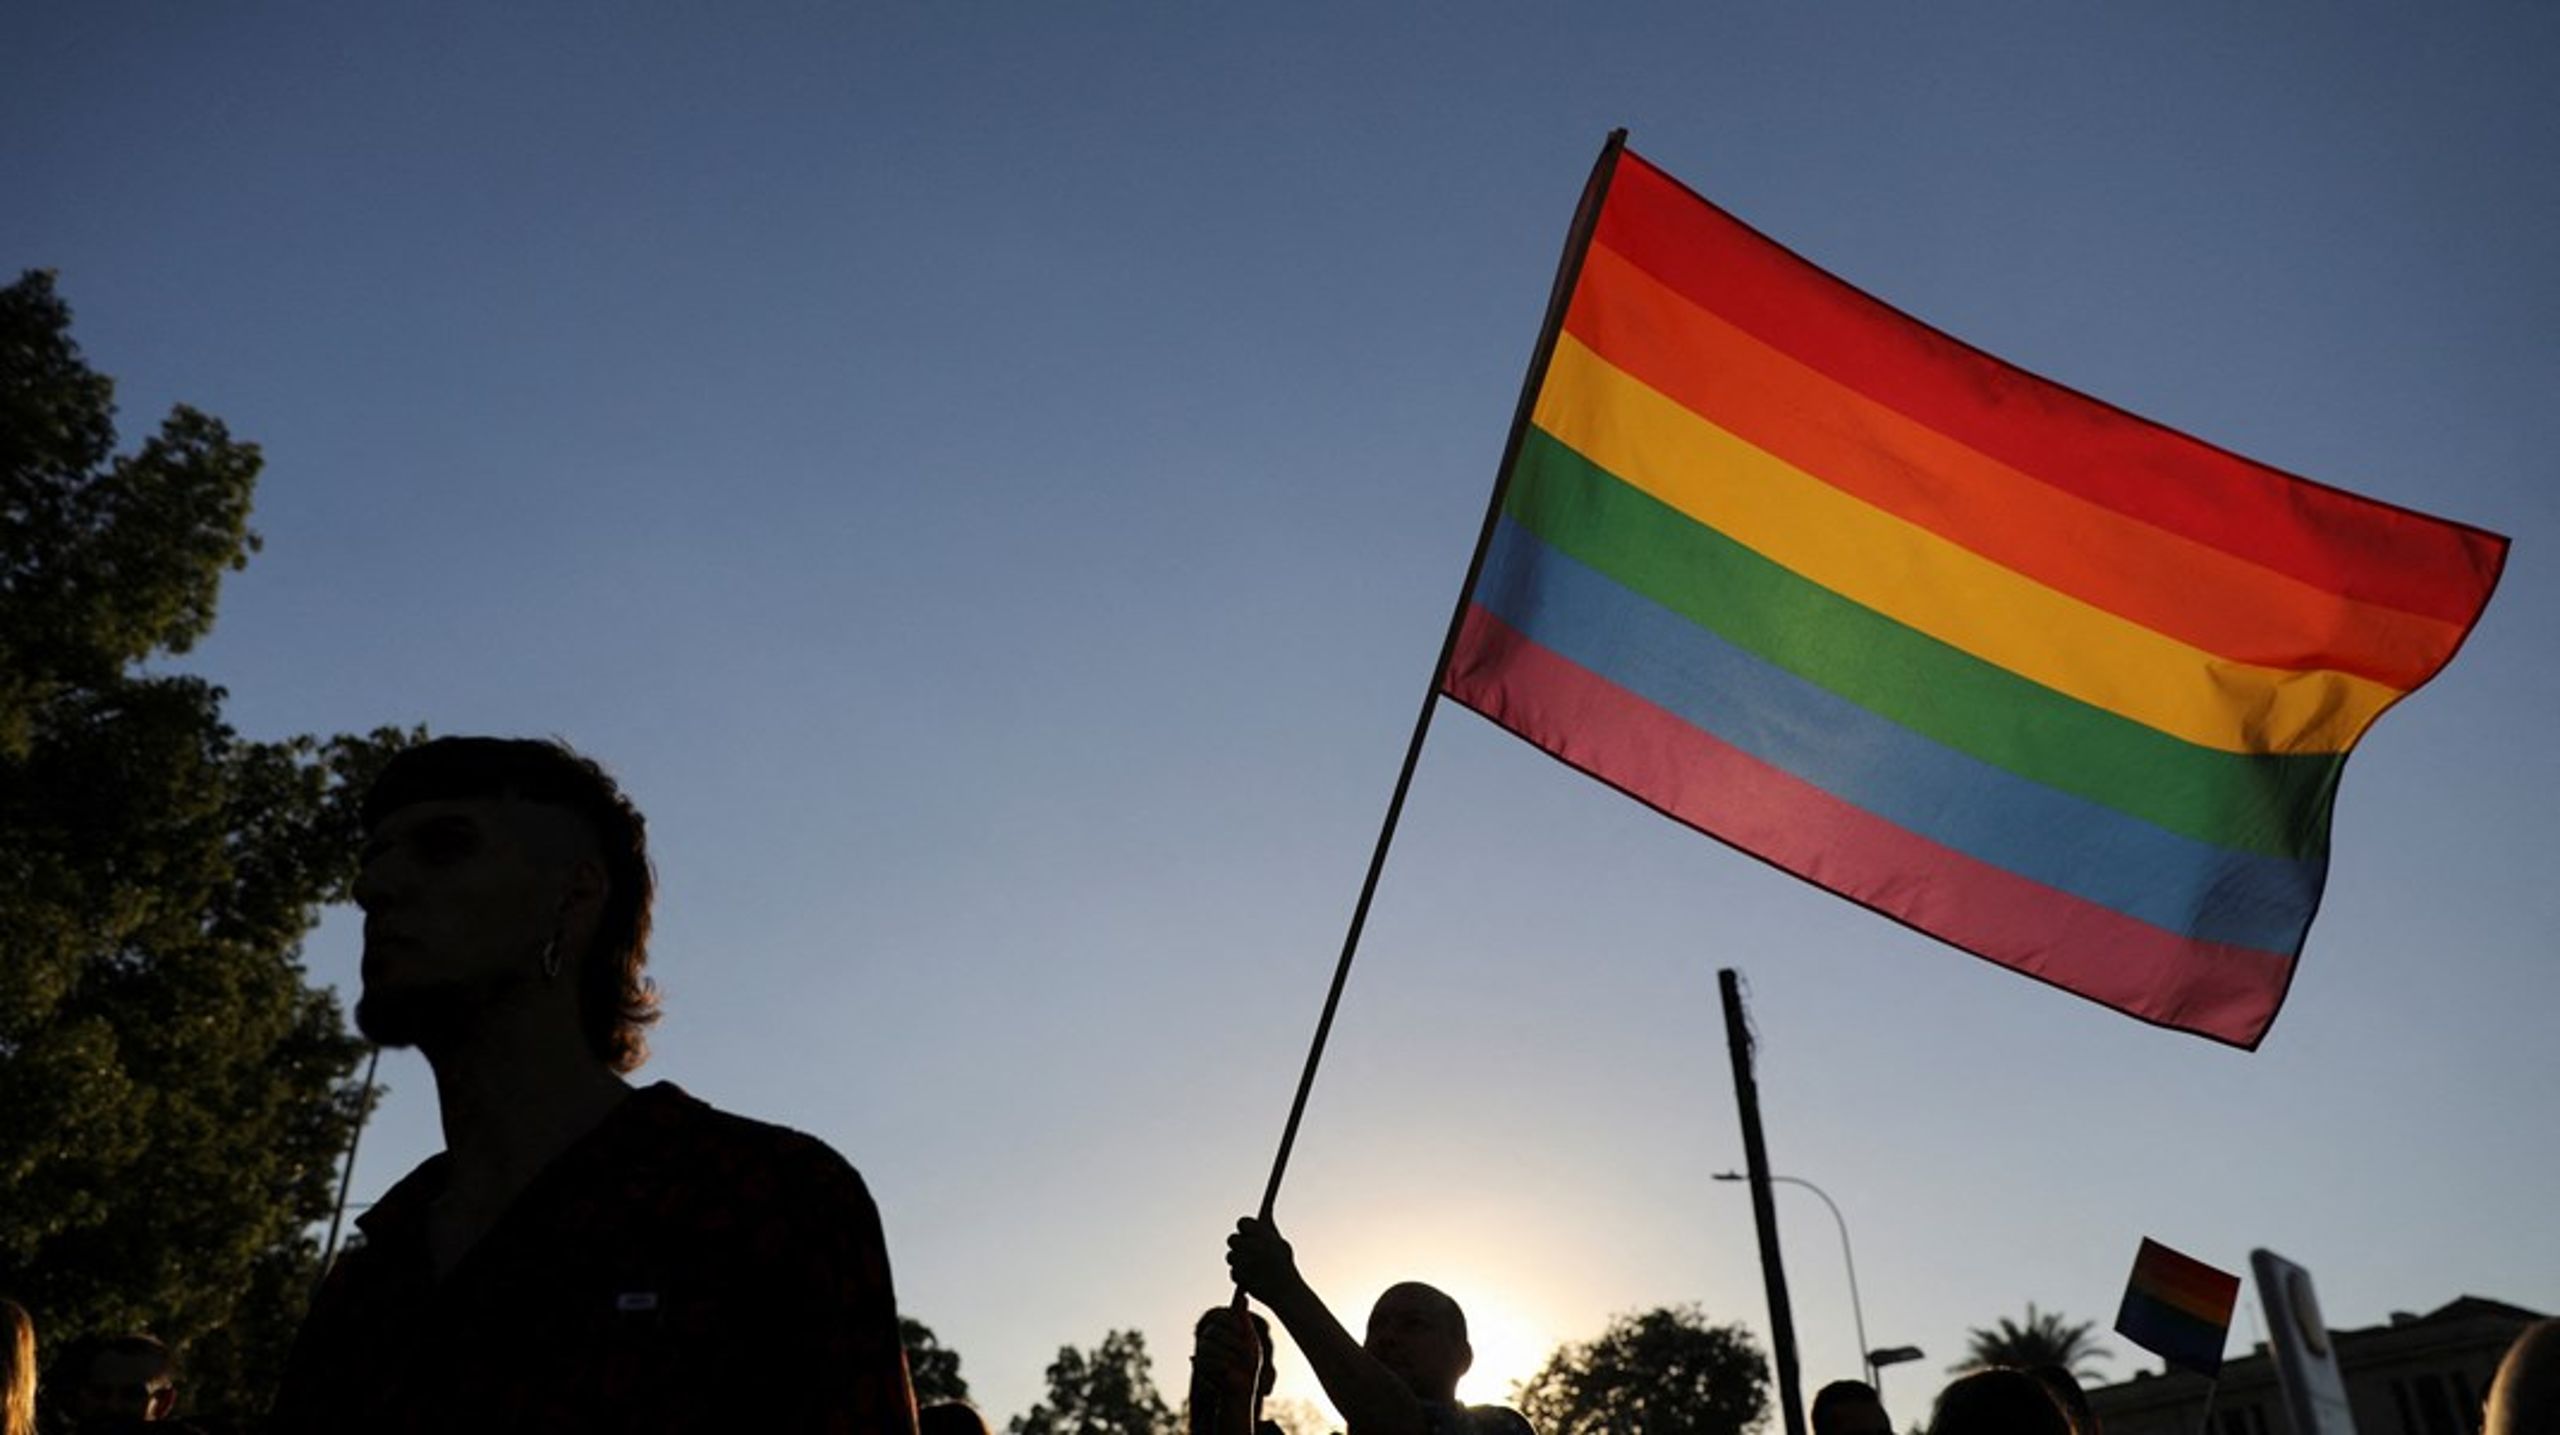 Mens LGBT+-personer oplever forfølgelser og diskrimination verden over, er der få ting, der splitter det internationale samfund mere end spørgsmålet om deres rettigheder, skriver Louise Holck.